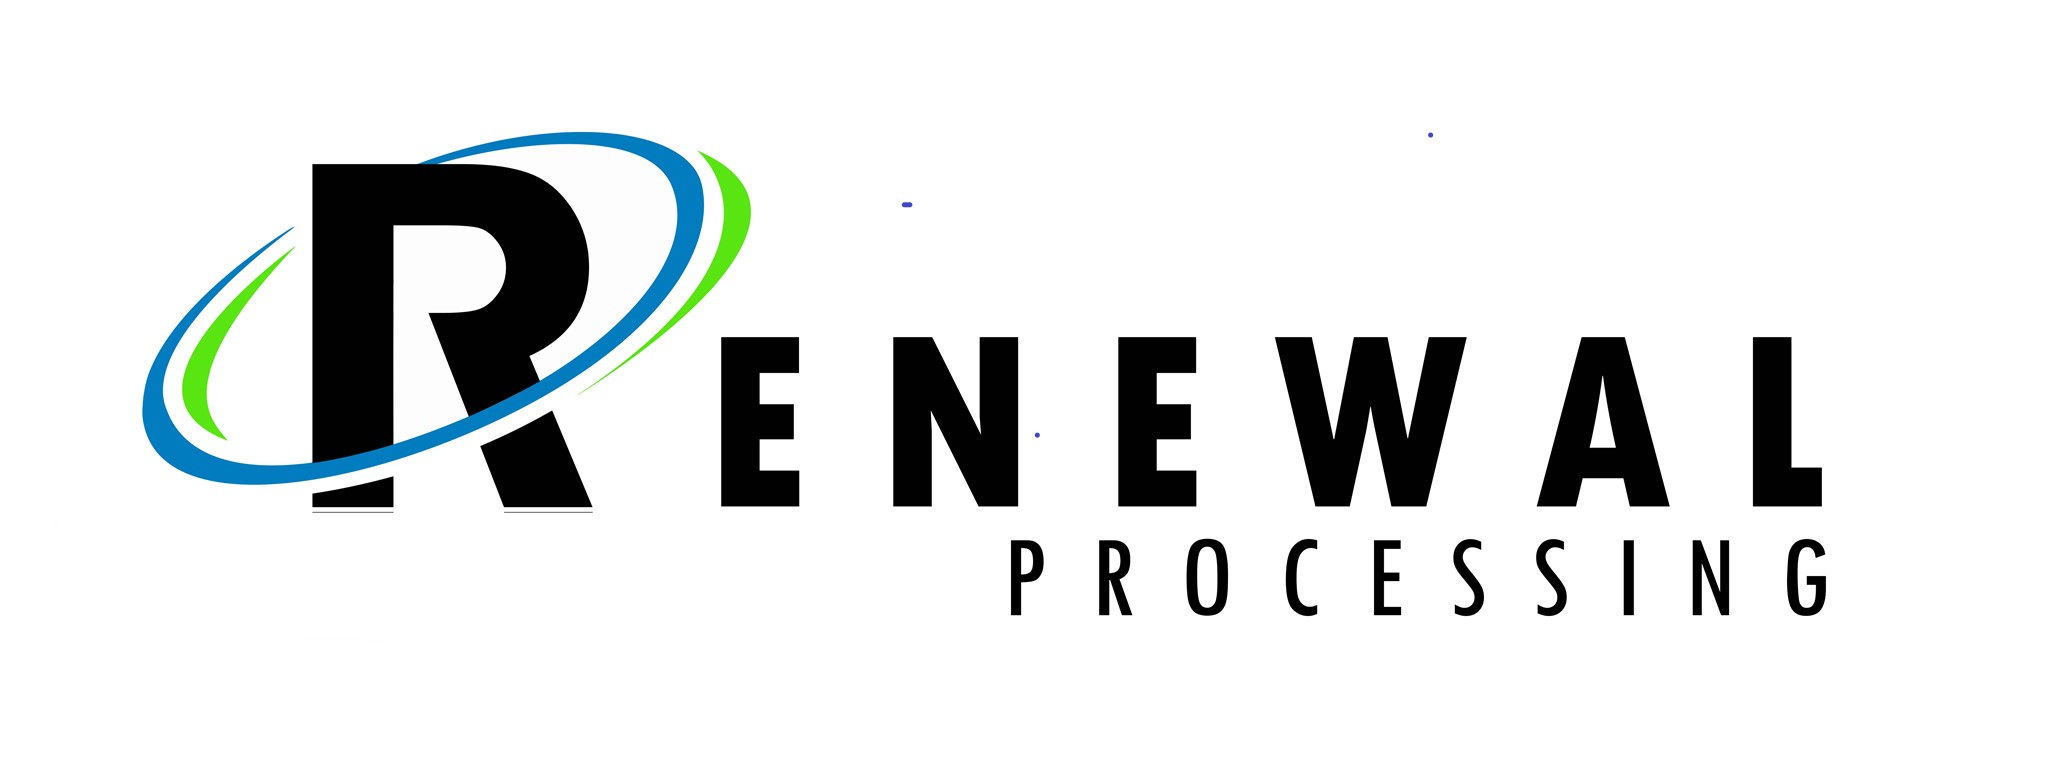 Renewal Processing logo